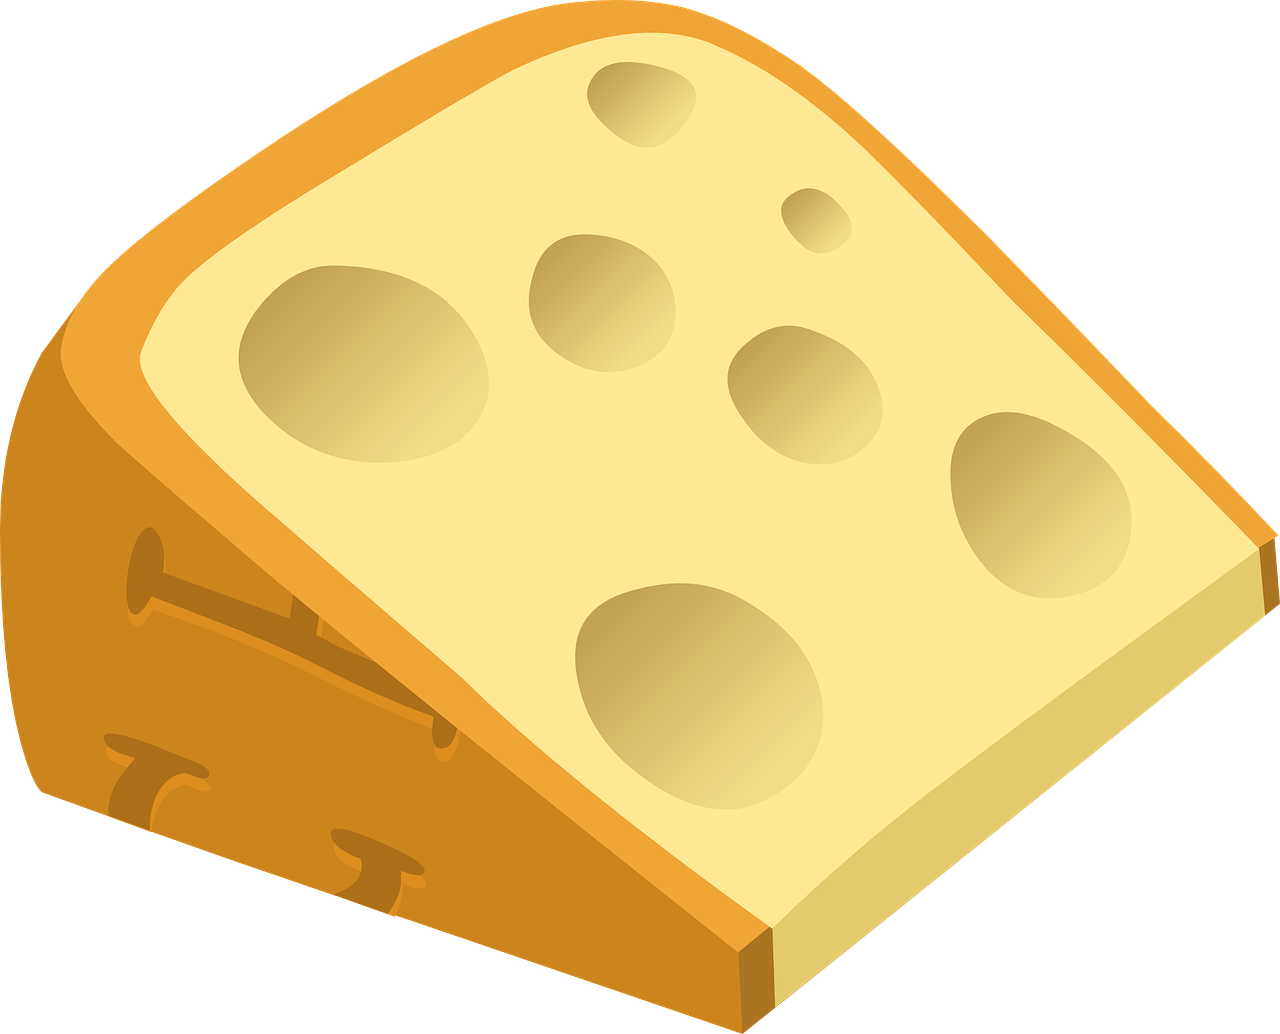 Swiss Cheese Kugel